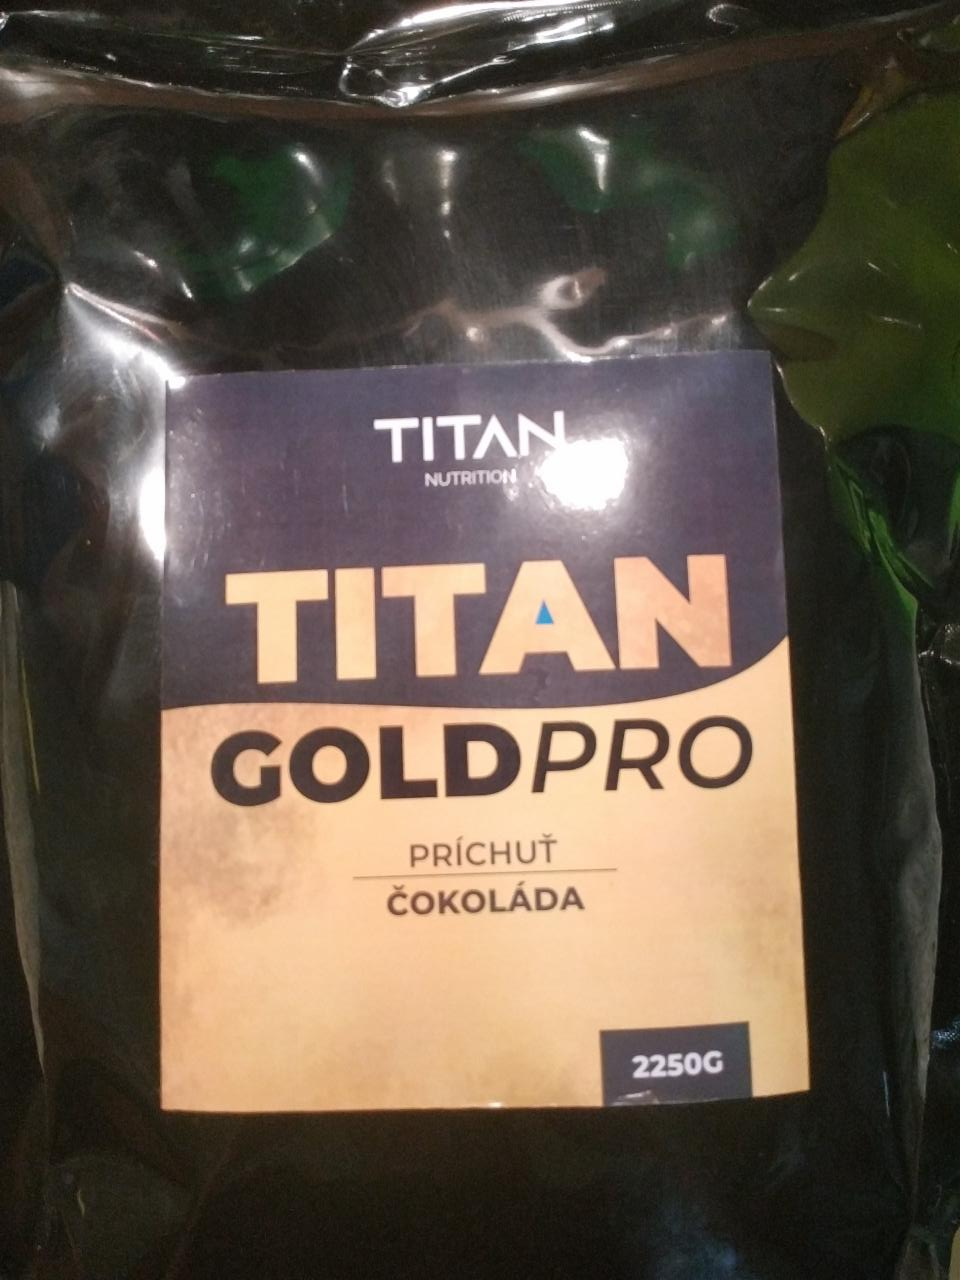 Képek - Gold Pro csokoládés protein Titan Nutrition